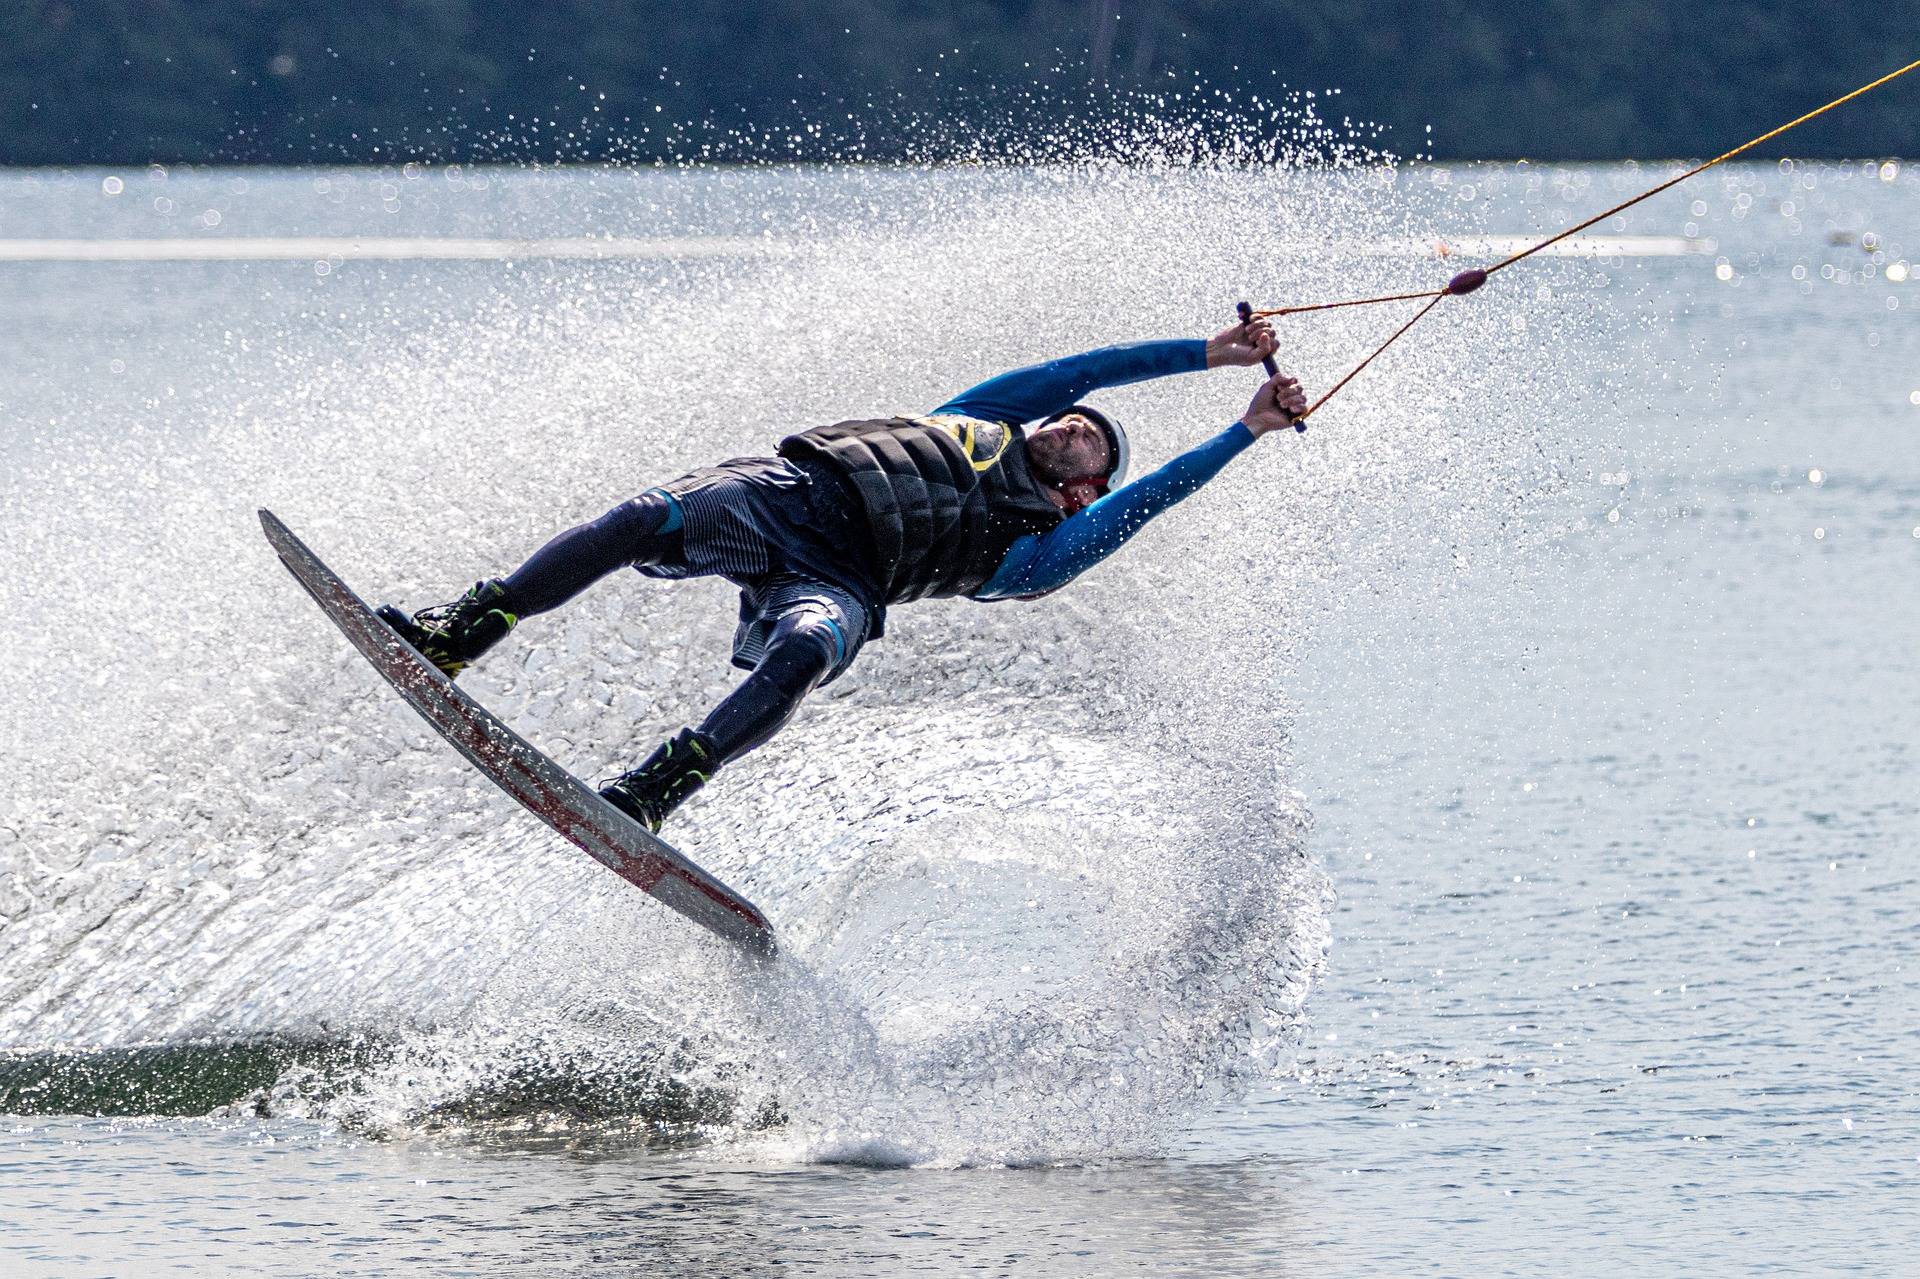 Do water sports. Водный спорт. Водные лыжи вид спорта. Занятие экстремальными видами спорта. Экстремальные водные виды спорта.